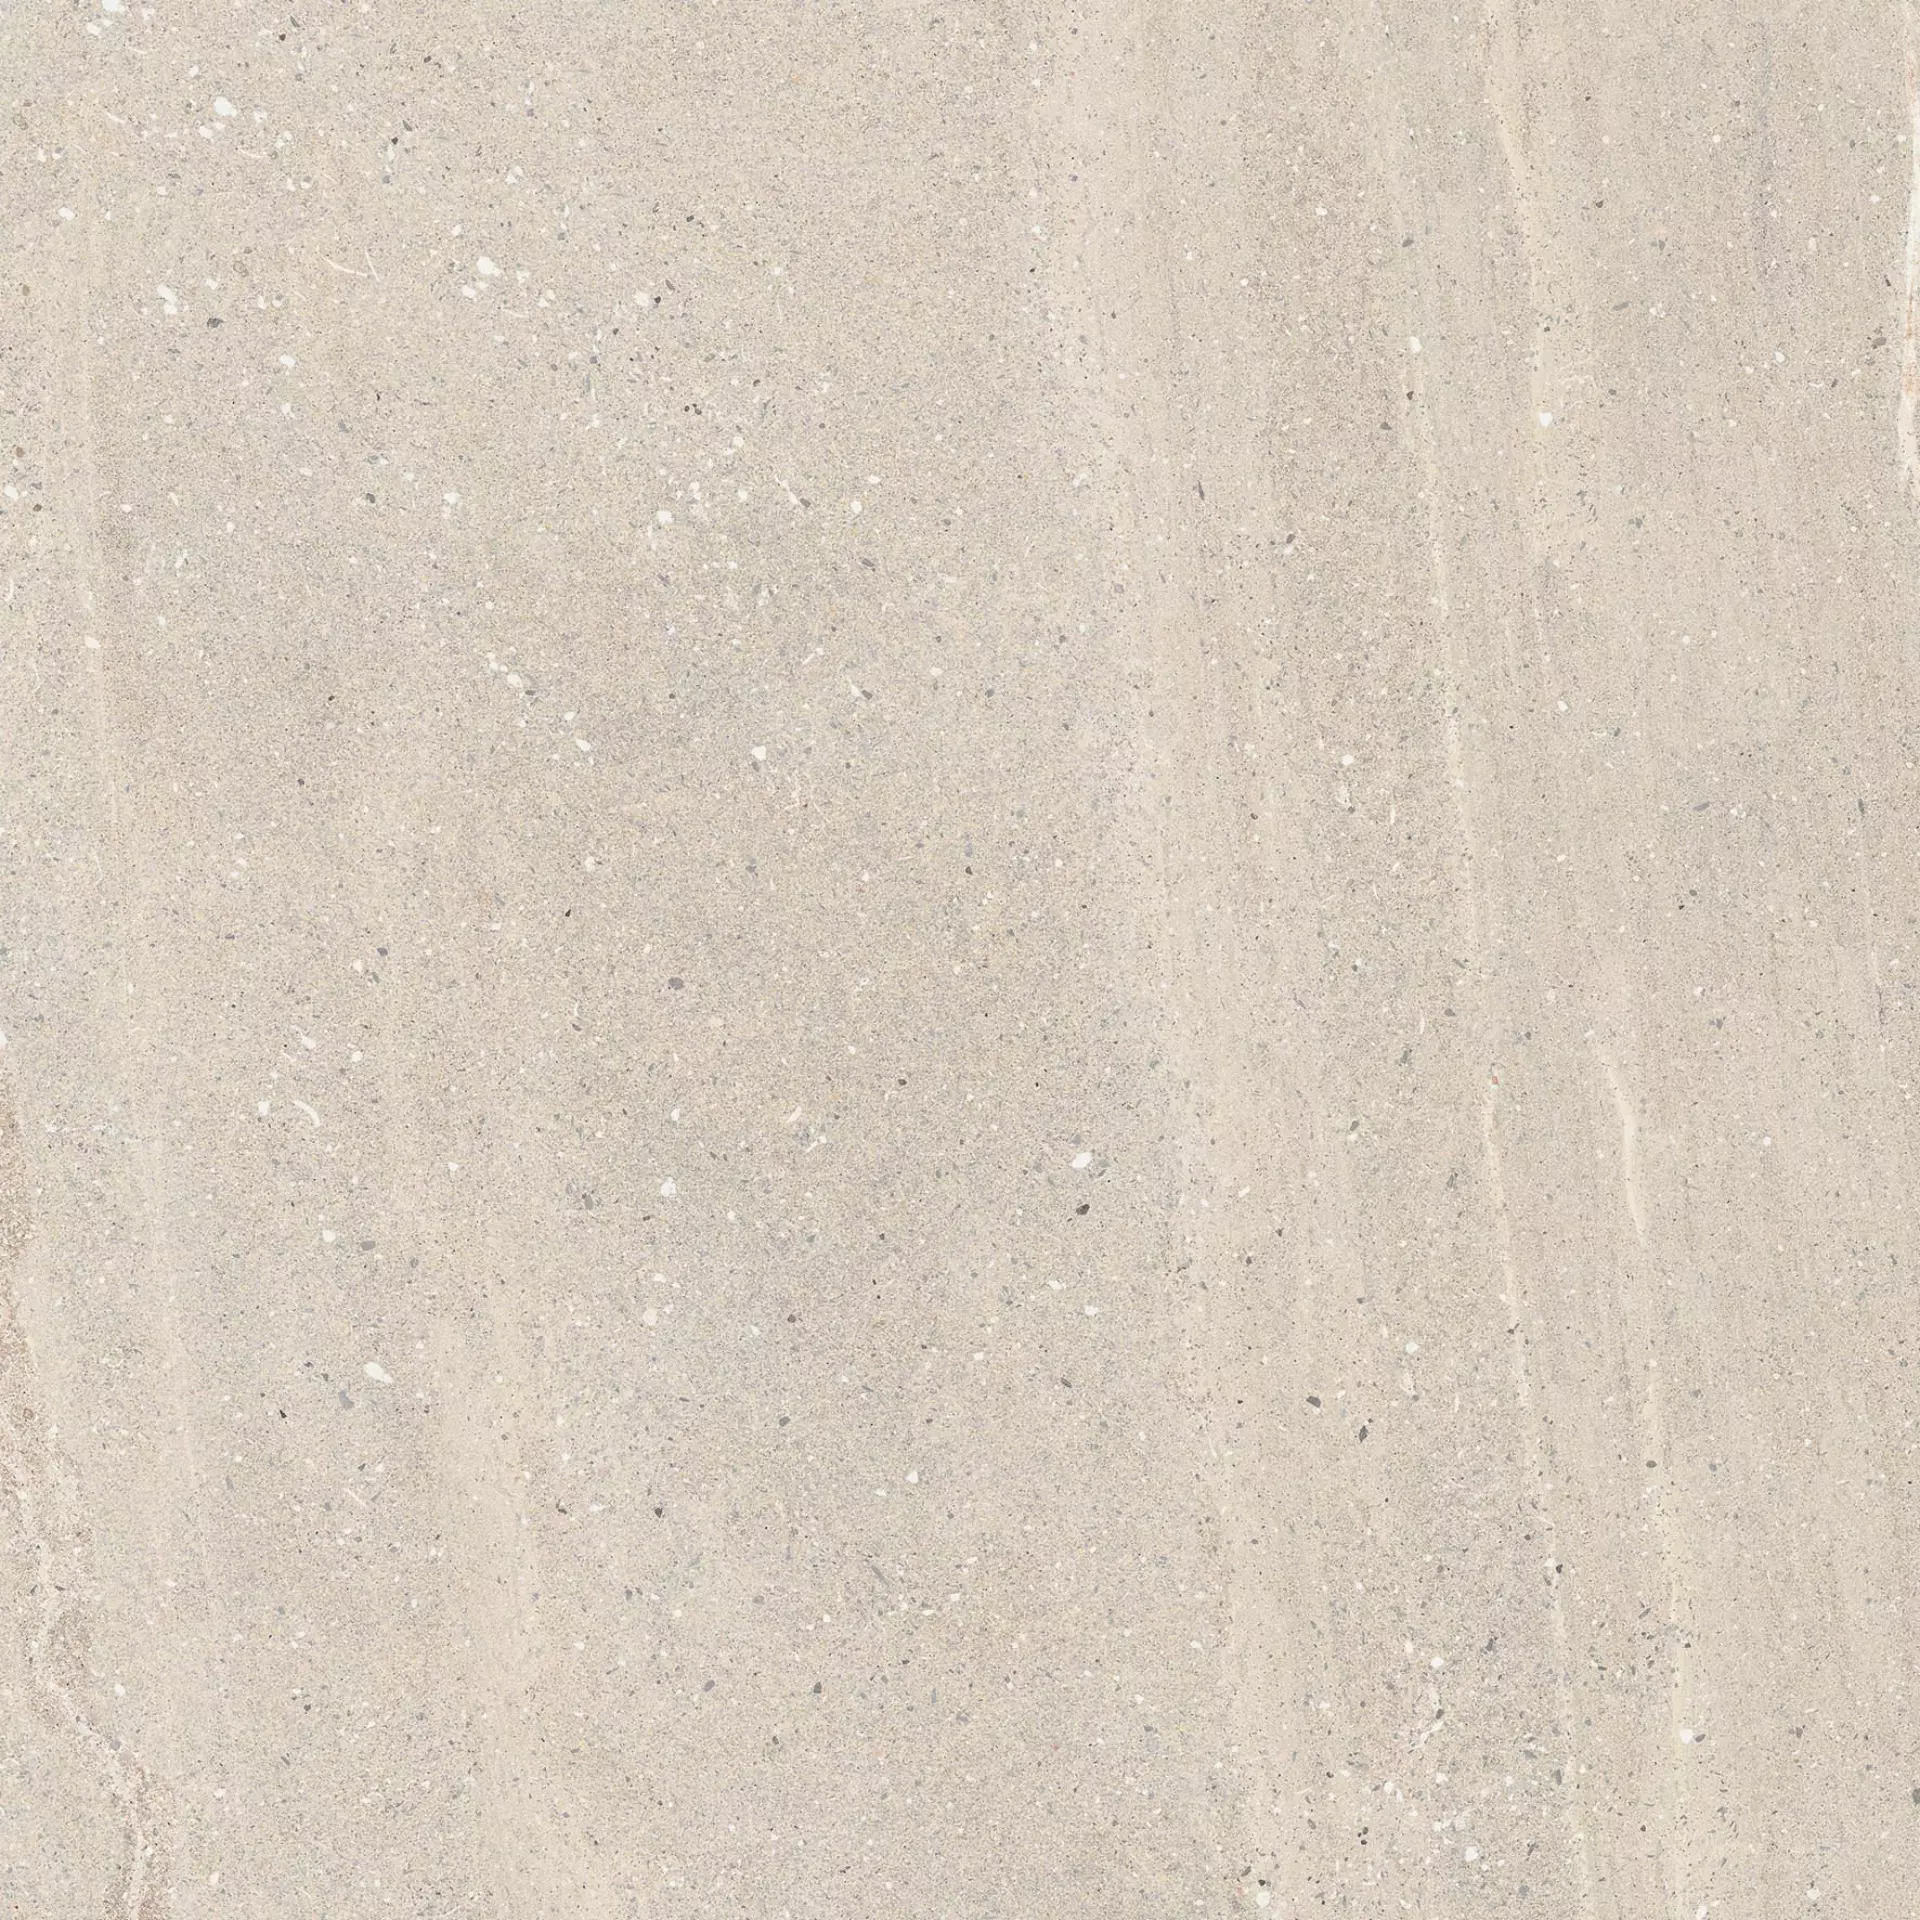 Flaviker Rockin Desert Naturale PF60010120 60x60cm rectified 8,5mm